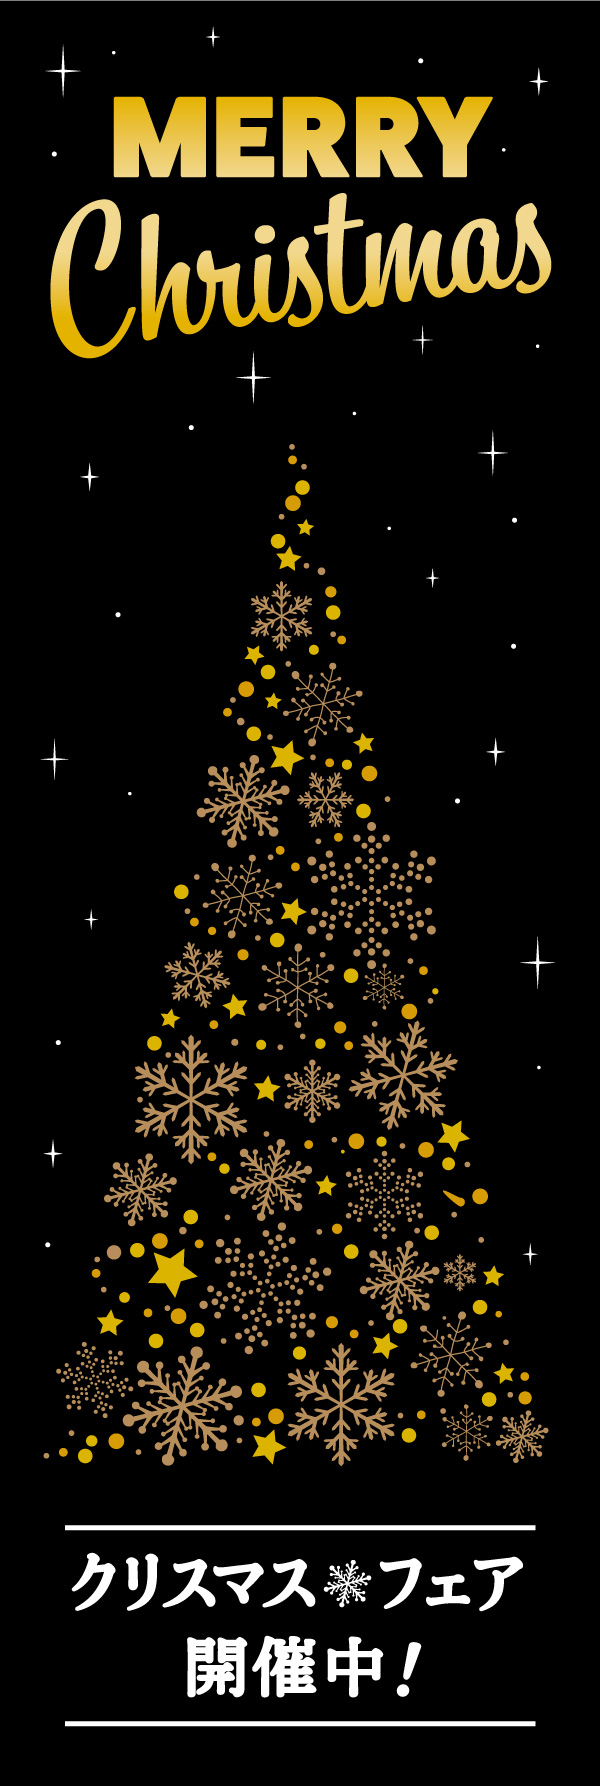 クリスマスフェア 14「クリスマスフェア」ののぼりです。黒背景に金の飾りで、高級感のあるクリスマスのぼりに仕上げました。(Y.M) 